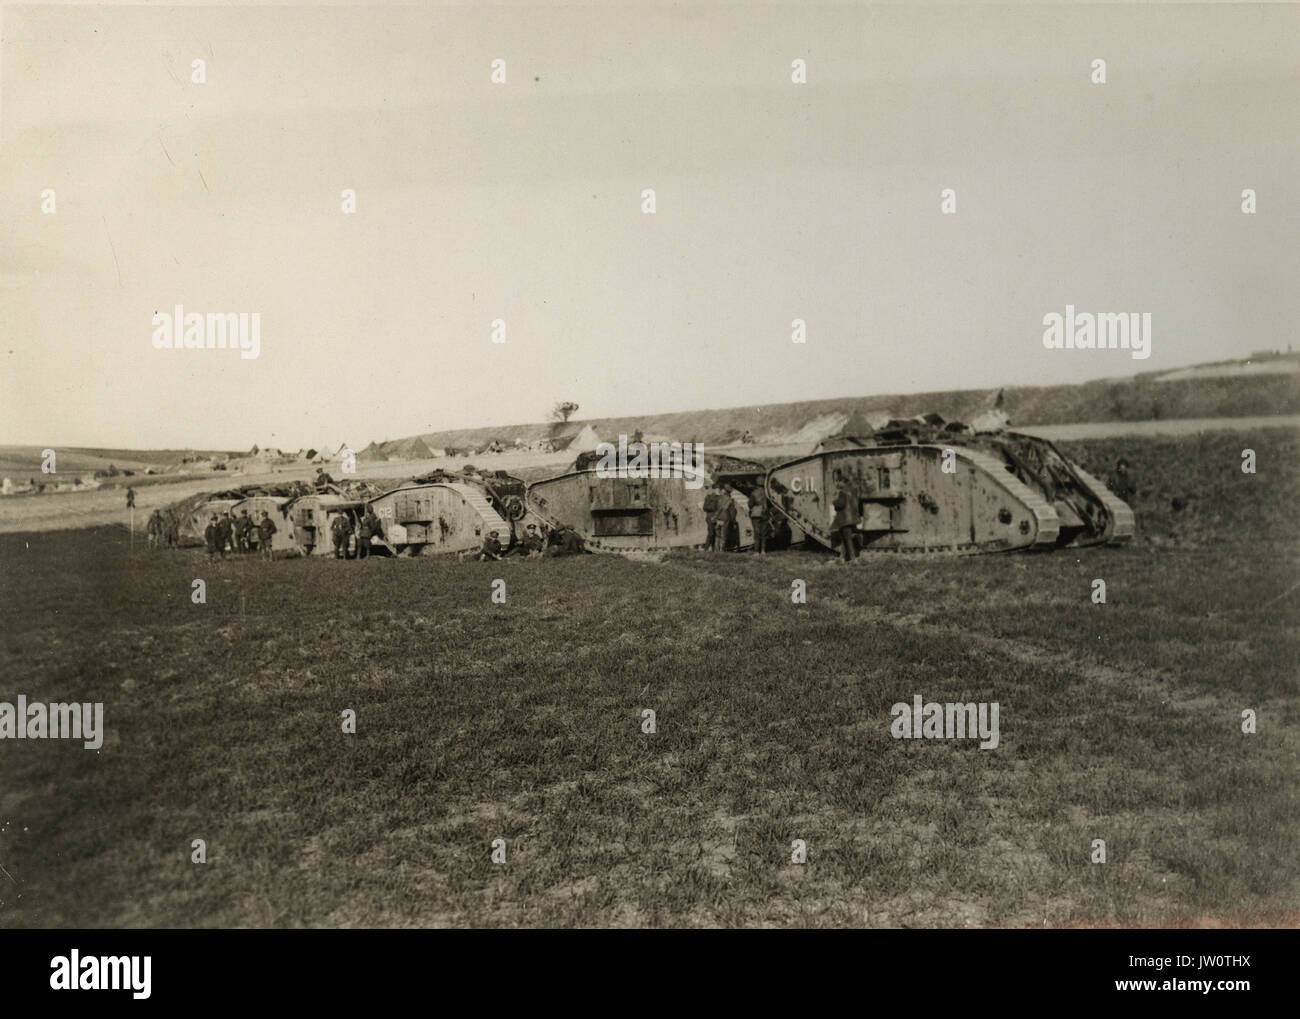 Gazzetta fotografia scattata sul British fronte occidentale in Francia   la grande offensiva tedesca - Serbatoi in attesa di ordini - Foto Stock